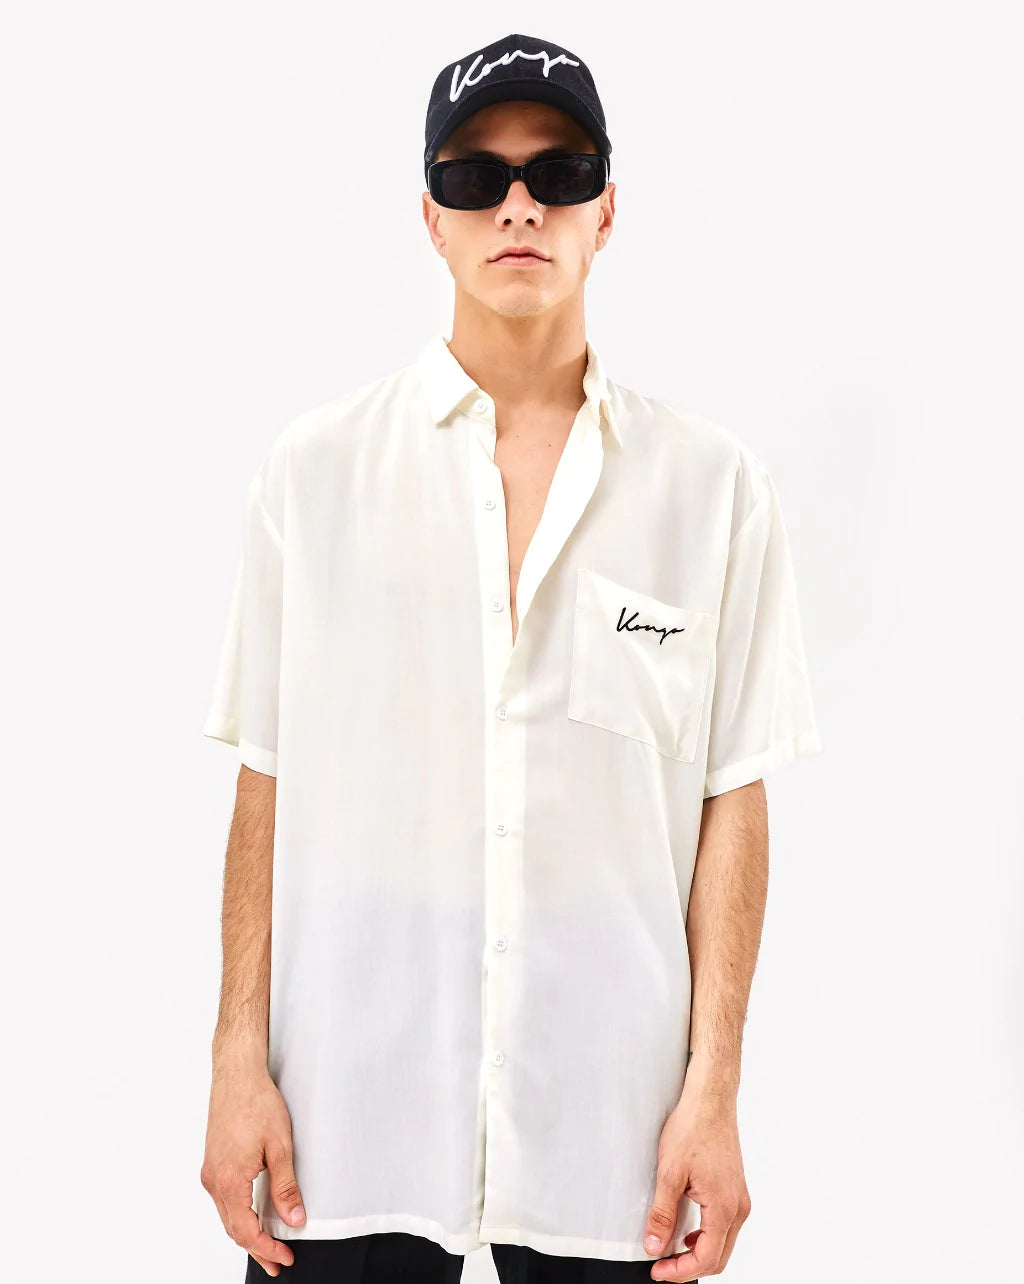 Lightweight half Sleeve Milan White Shirt with one Pocket - gender neutral